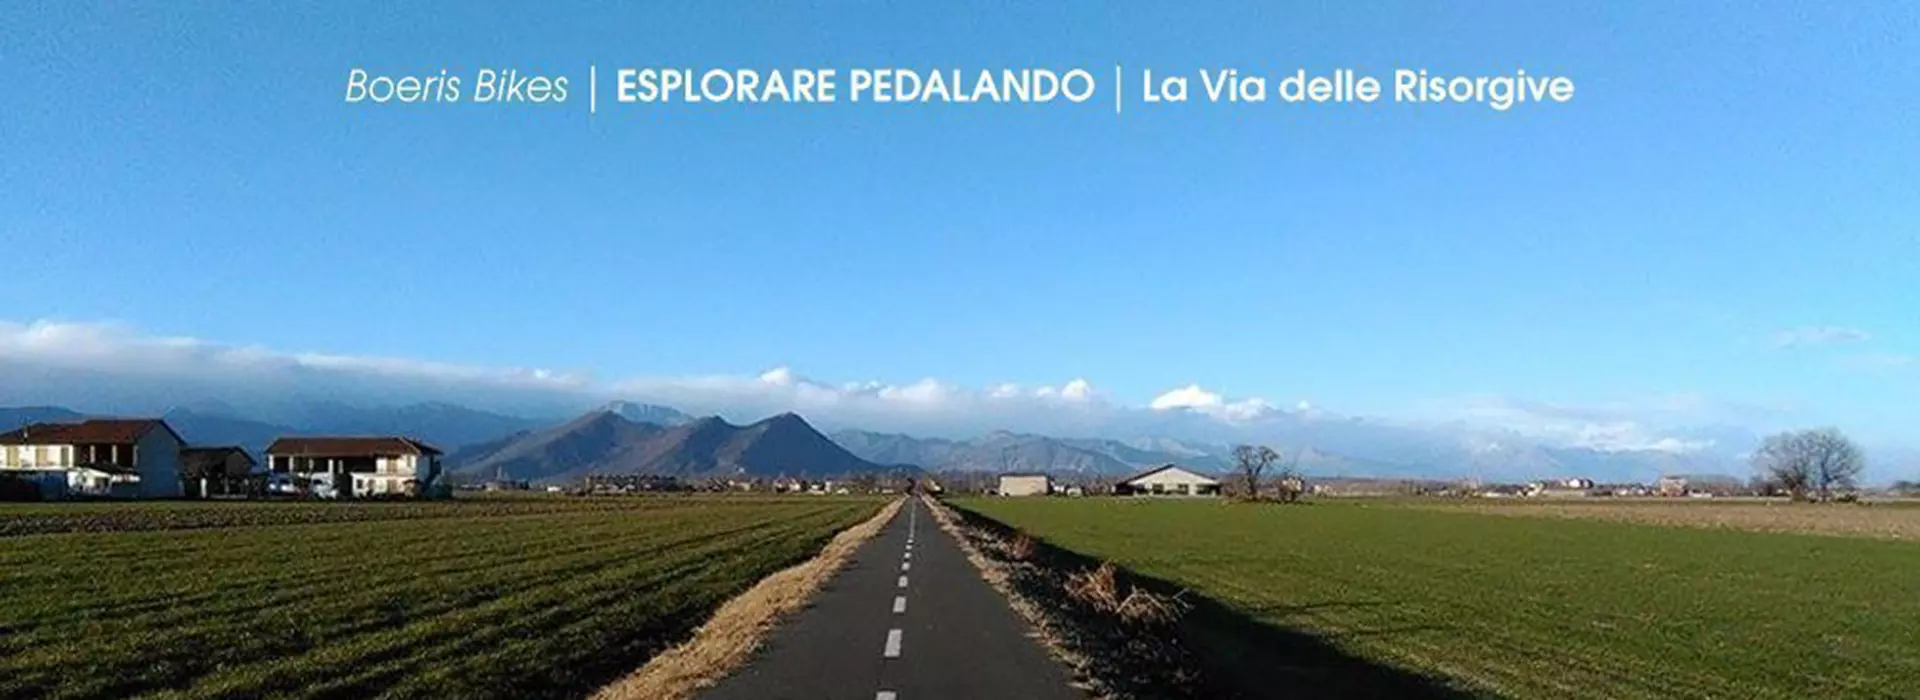 Copertina dell'articolo di Boeris Bikes Torino La via delle Risorgive esplorare pedalando con l'immagine di uno dei rettilinei percorsi da Villafranca per Airasca